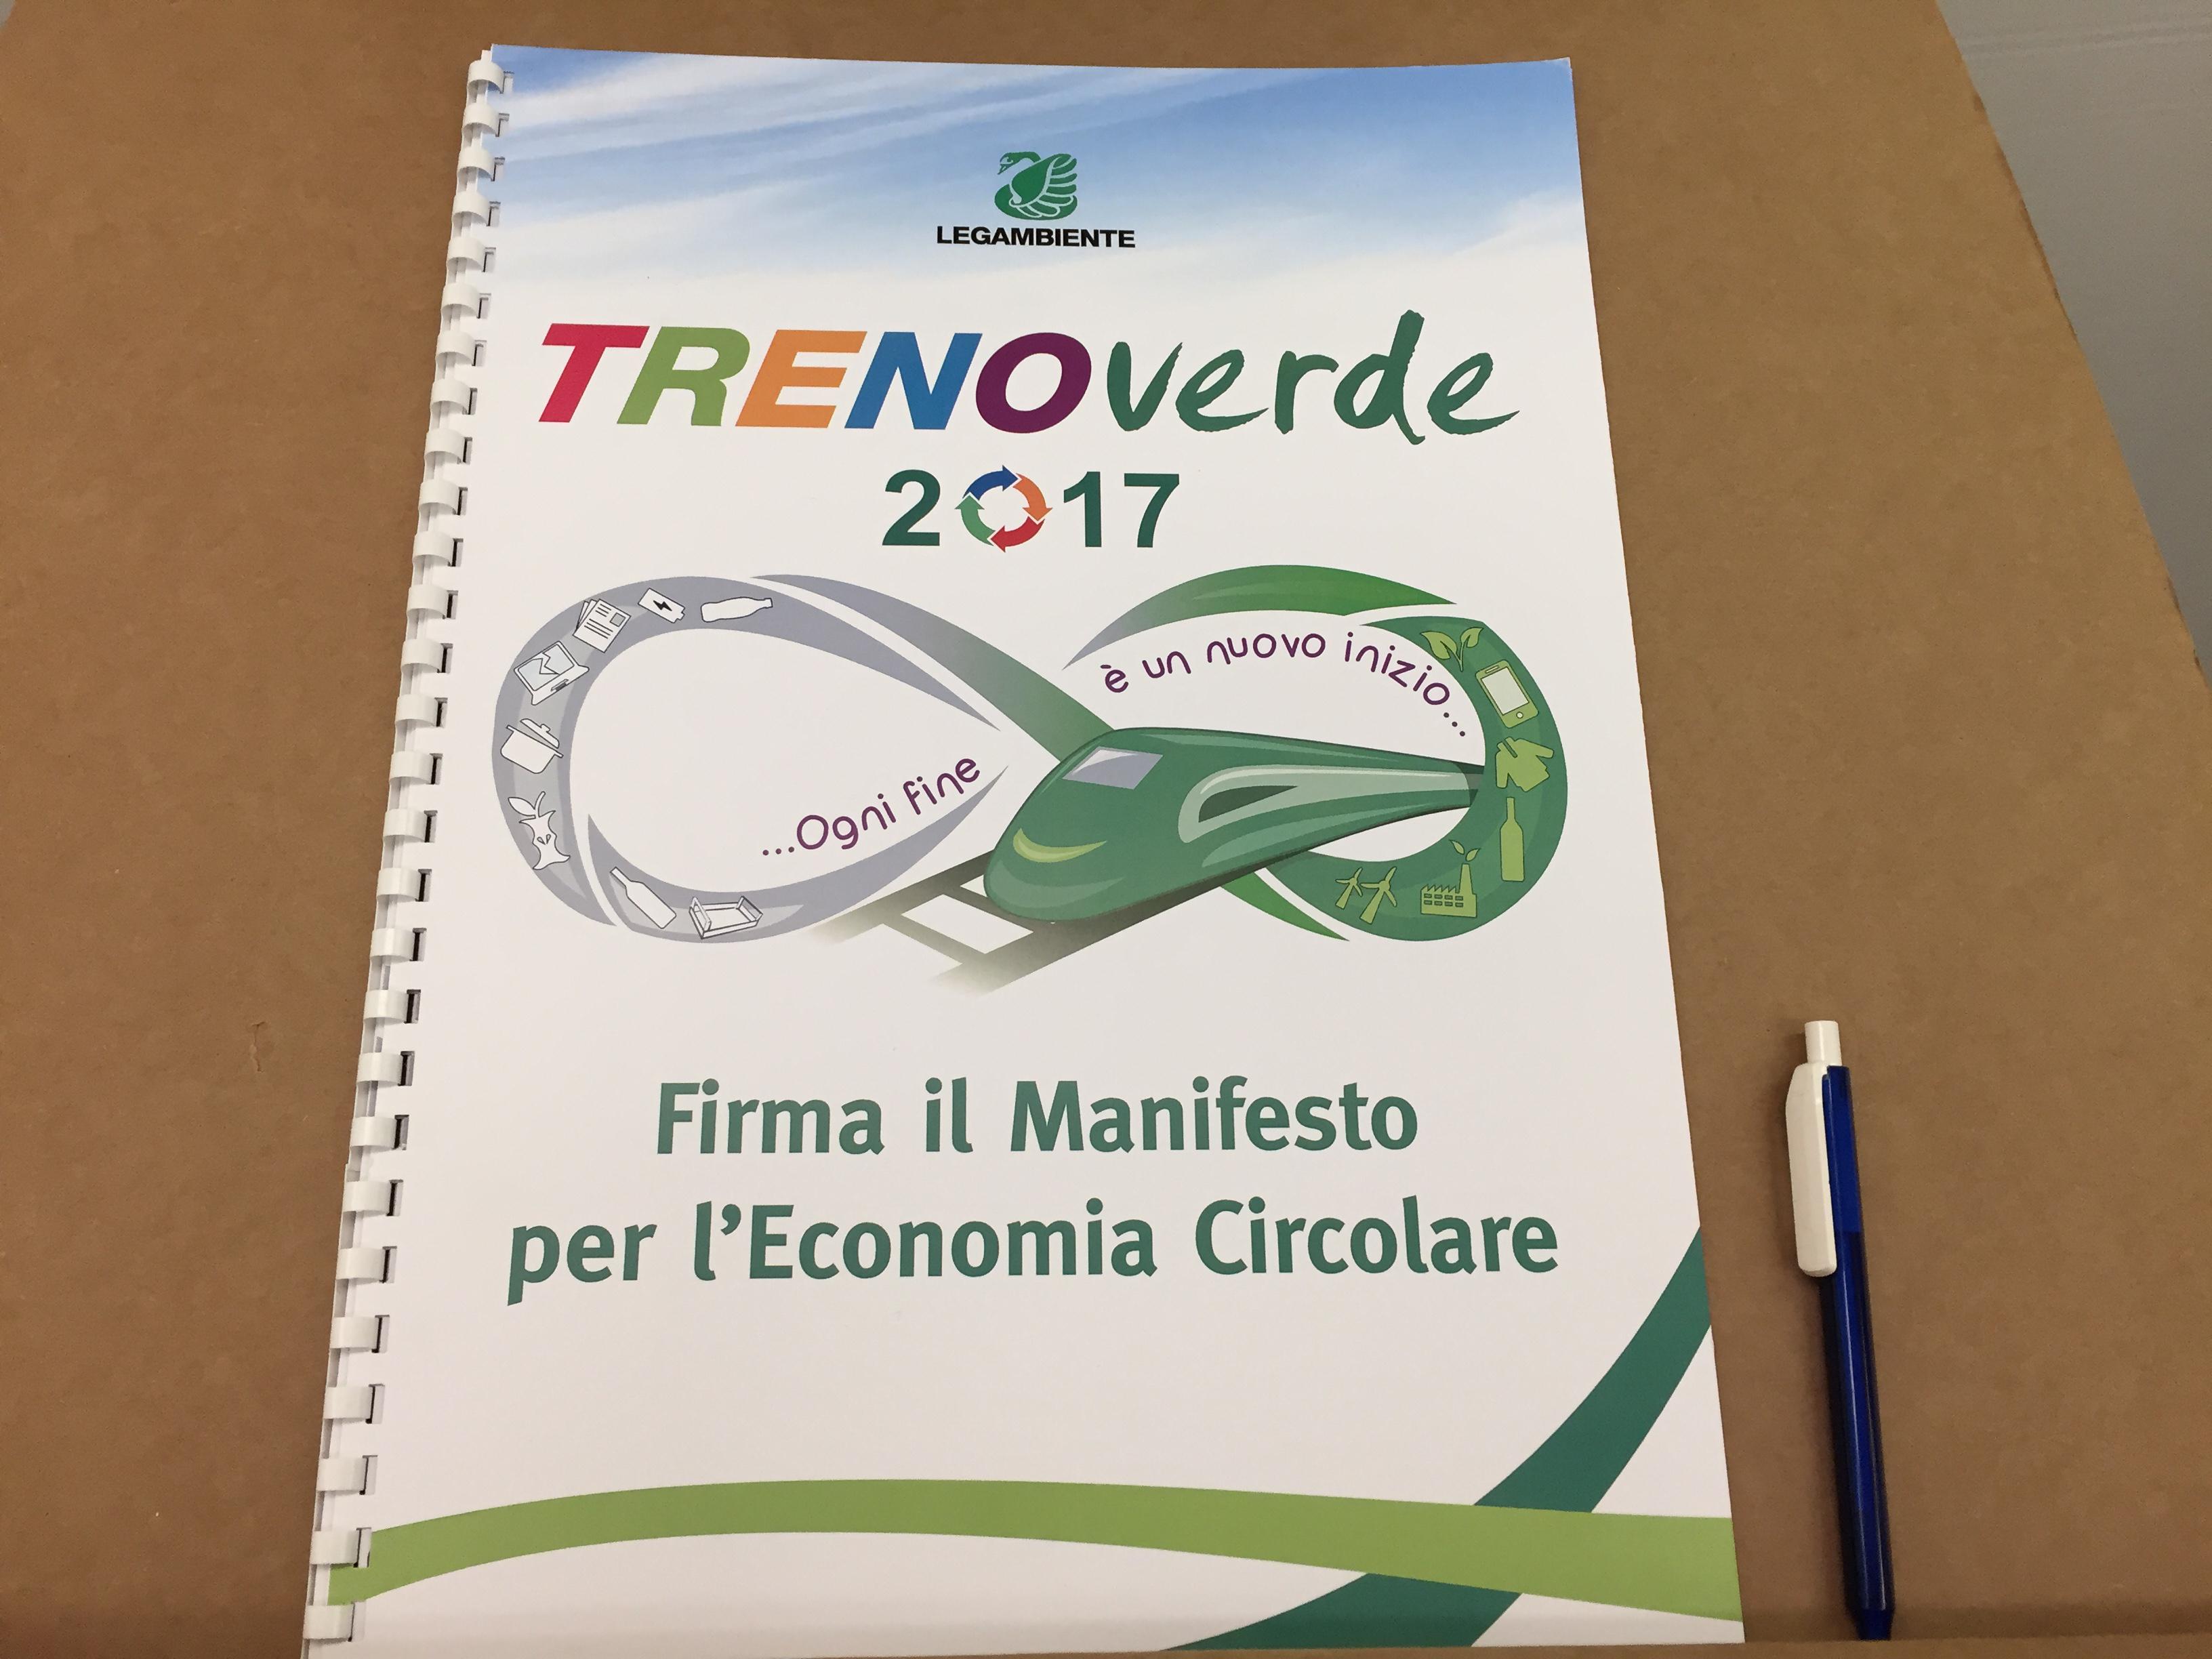 A bordo del Treno Verde è possibile firmare il Manifesto per l'Economia Circolare